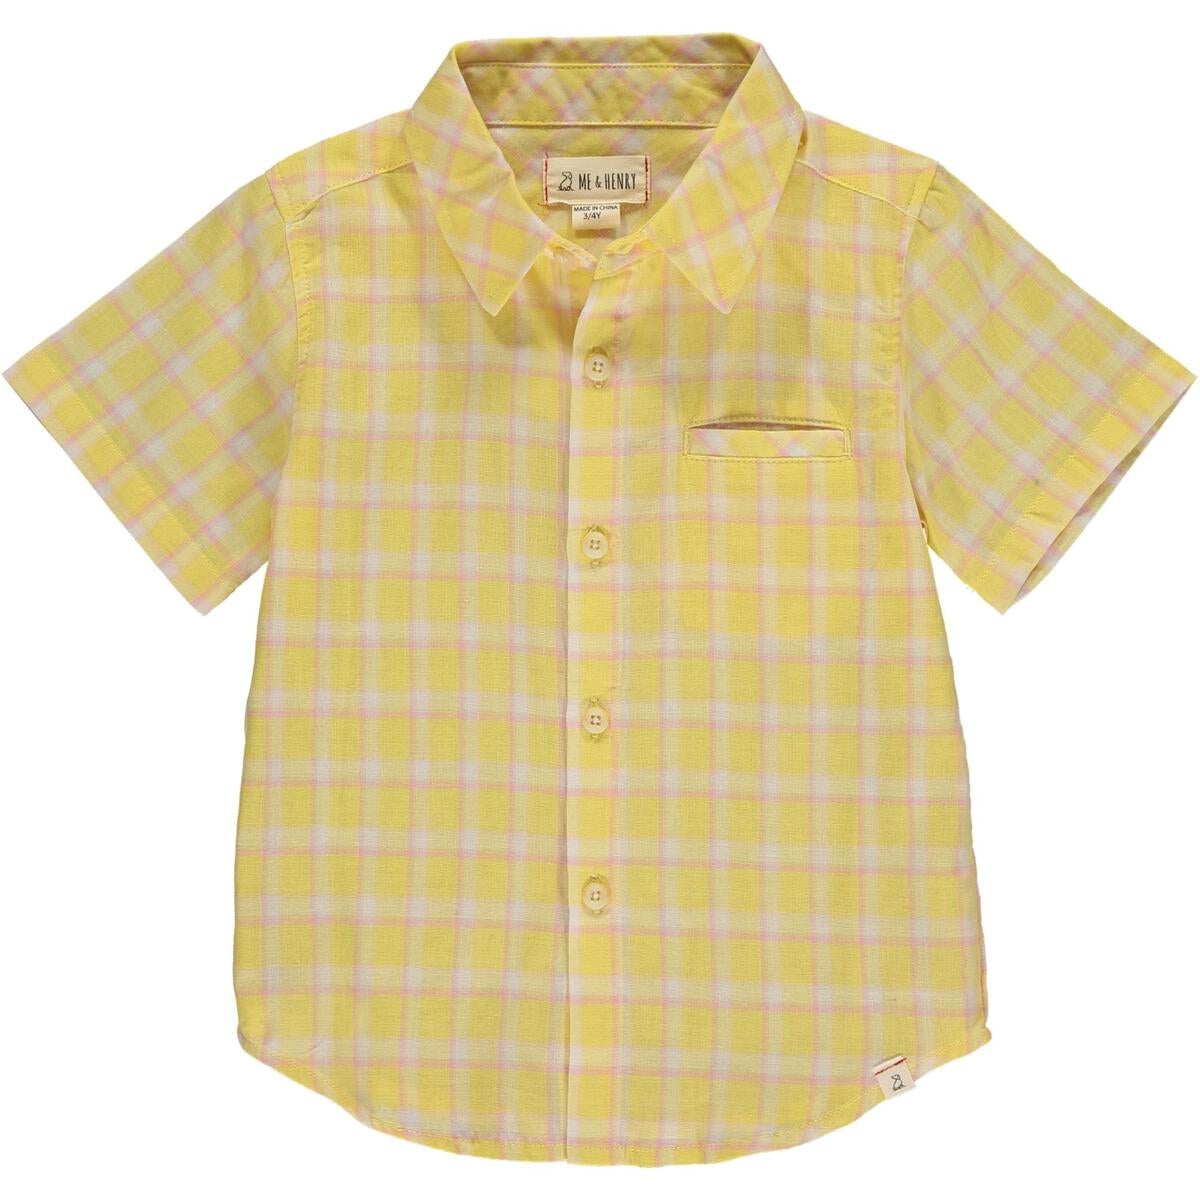 Me & Henry Newport Short Sleeved Shirt - Lemon Plaid-ME & HENRY-Little Giant Kidz